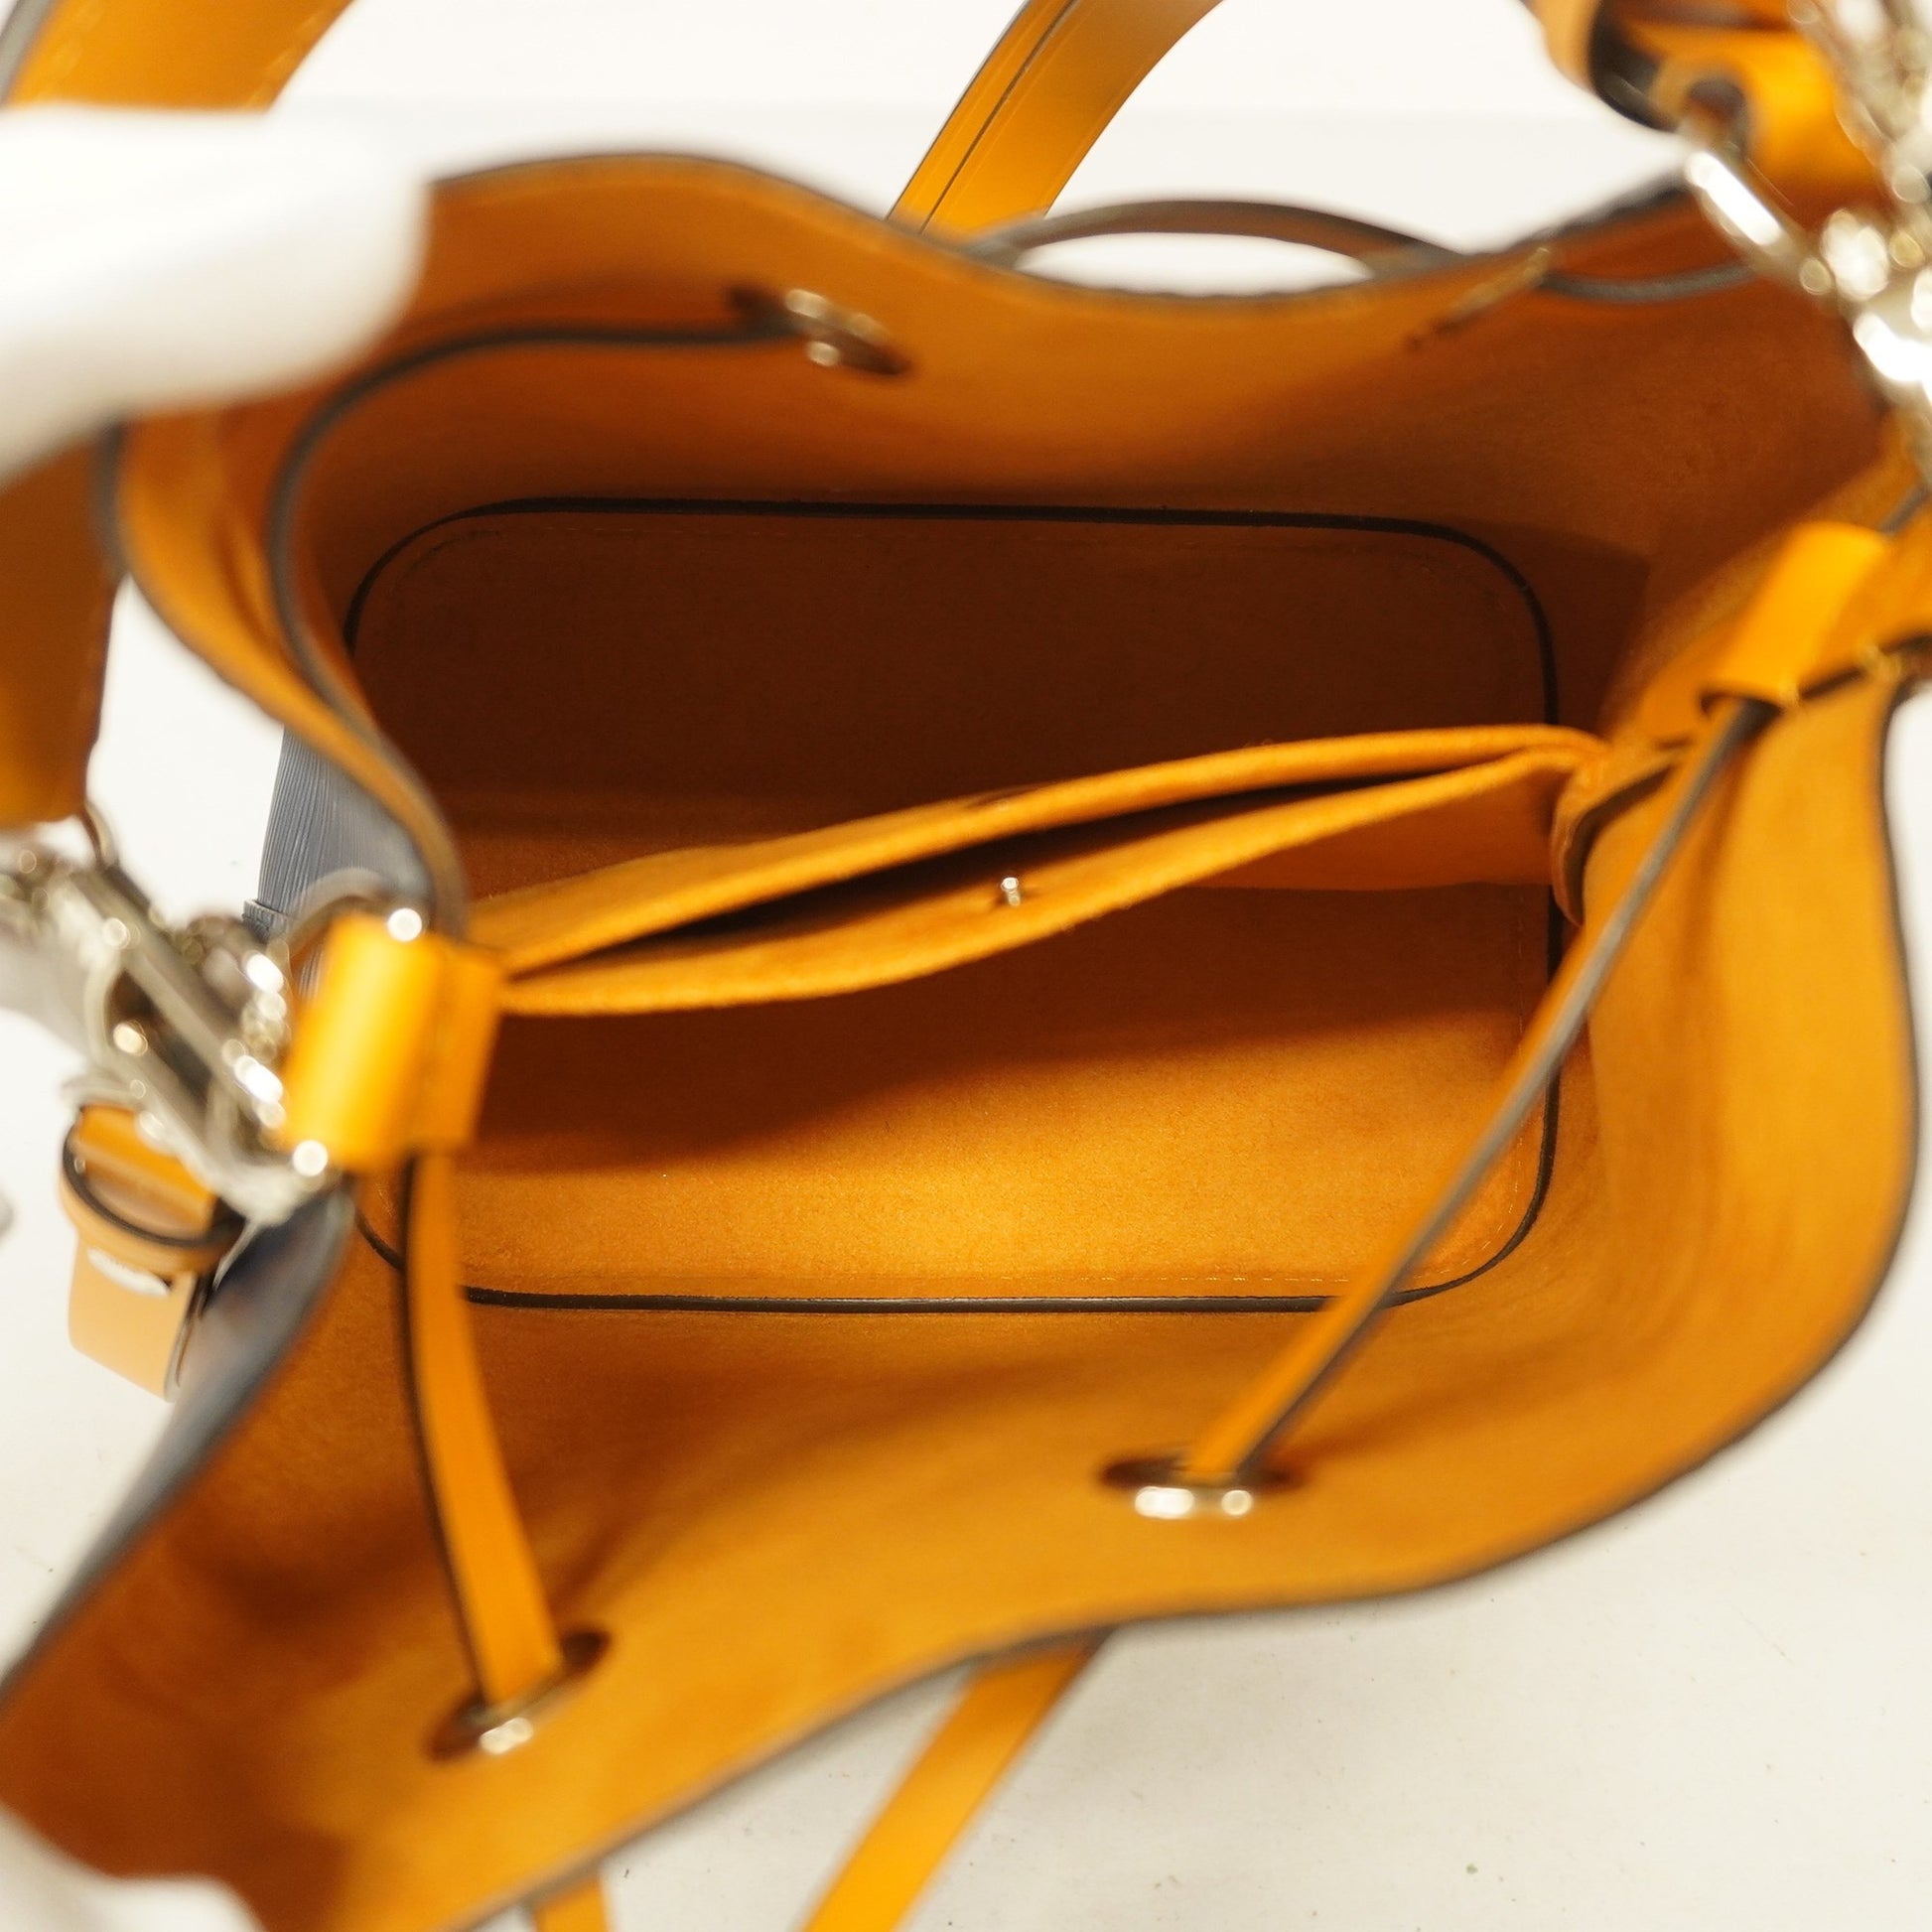 LOUIS VUITTON Epi Neonoe BB M53610 Shoulder Bag from Japan